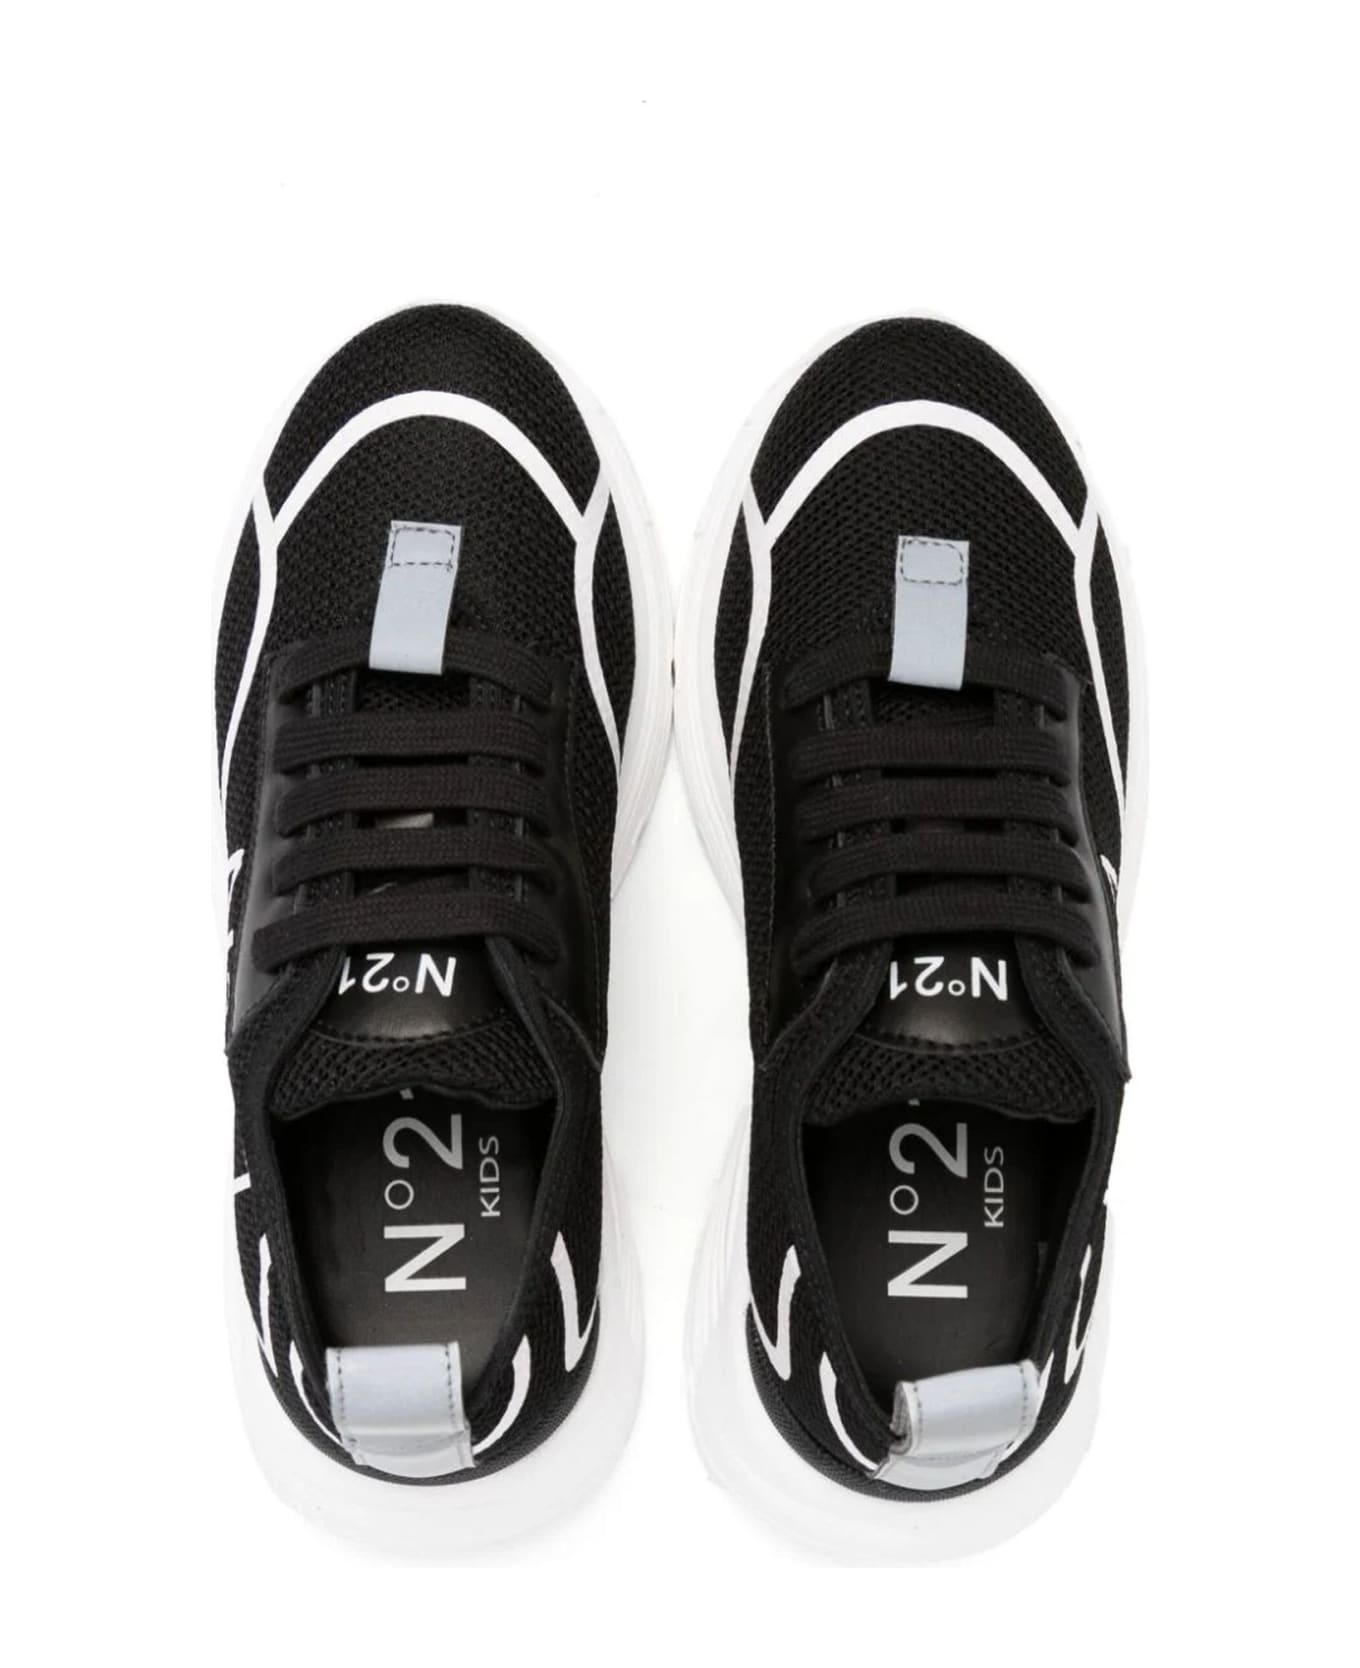 N.21 N°21 Sneakers Black - Black